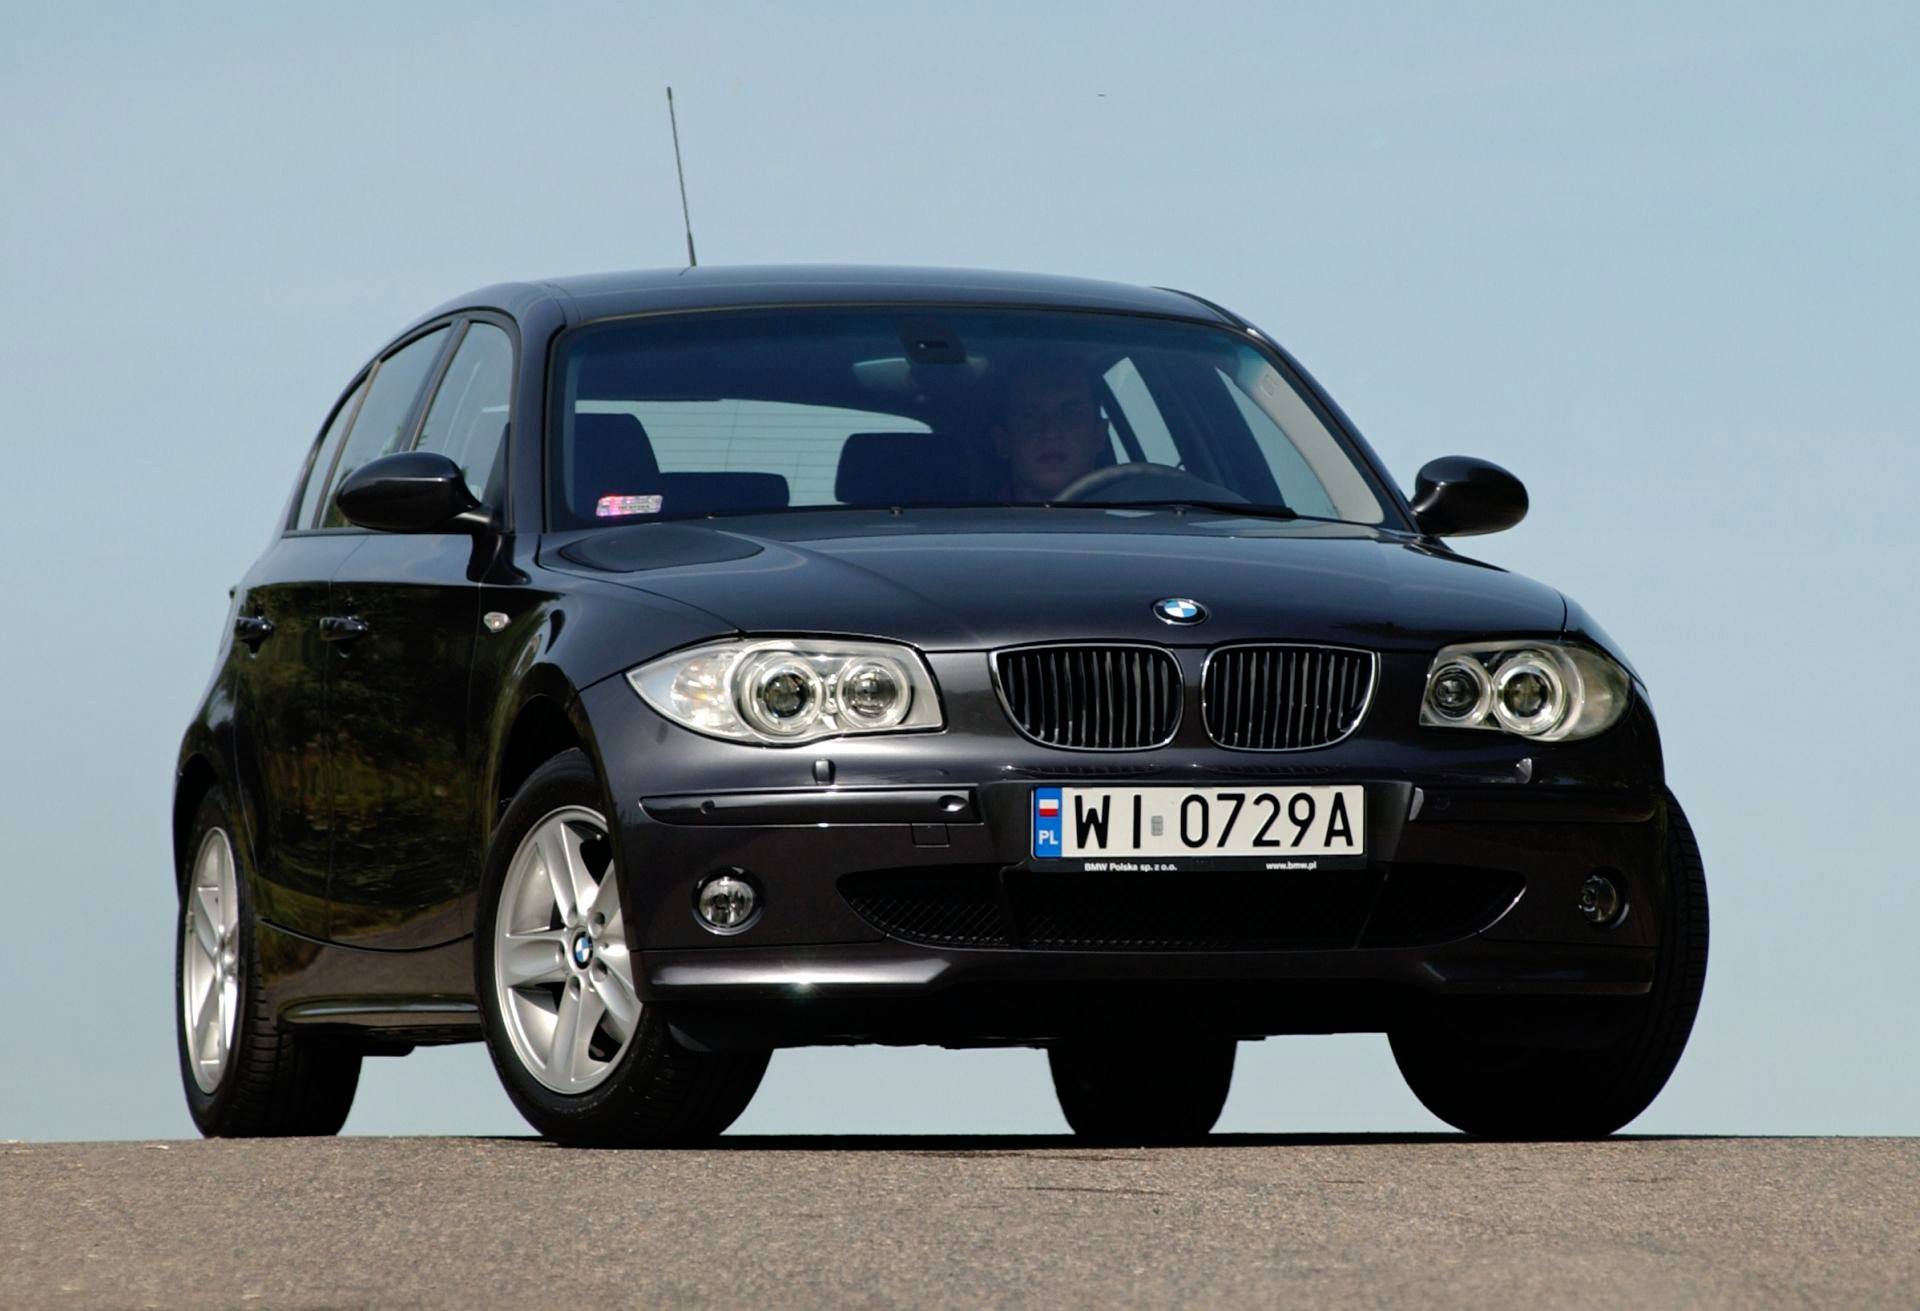 Używane BMW serii 1 (20042011) opinie użytkowników